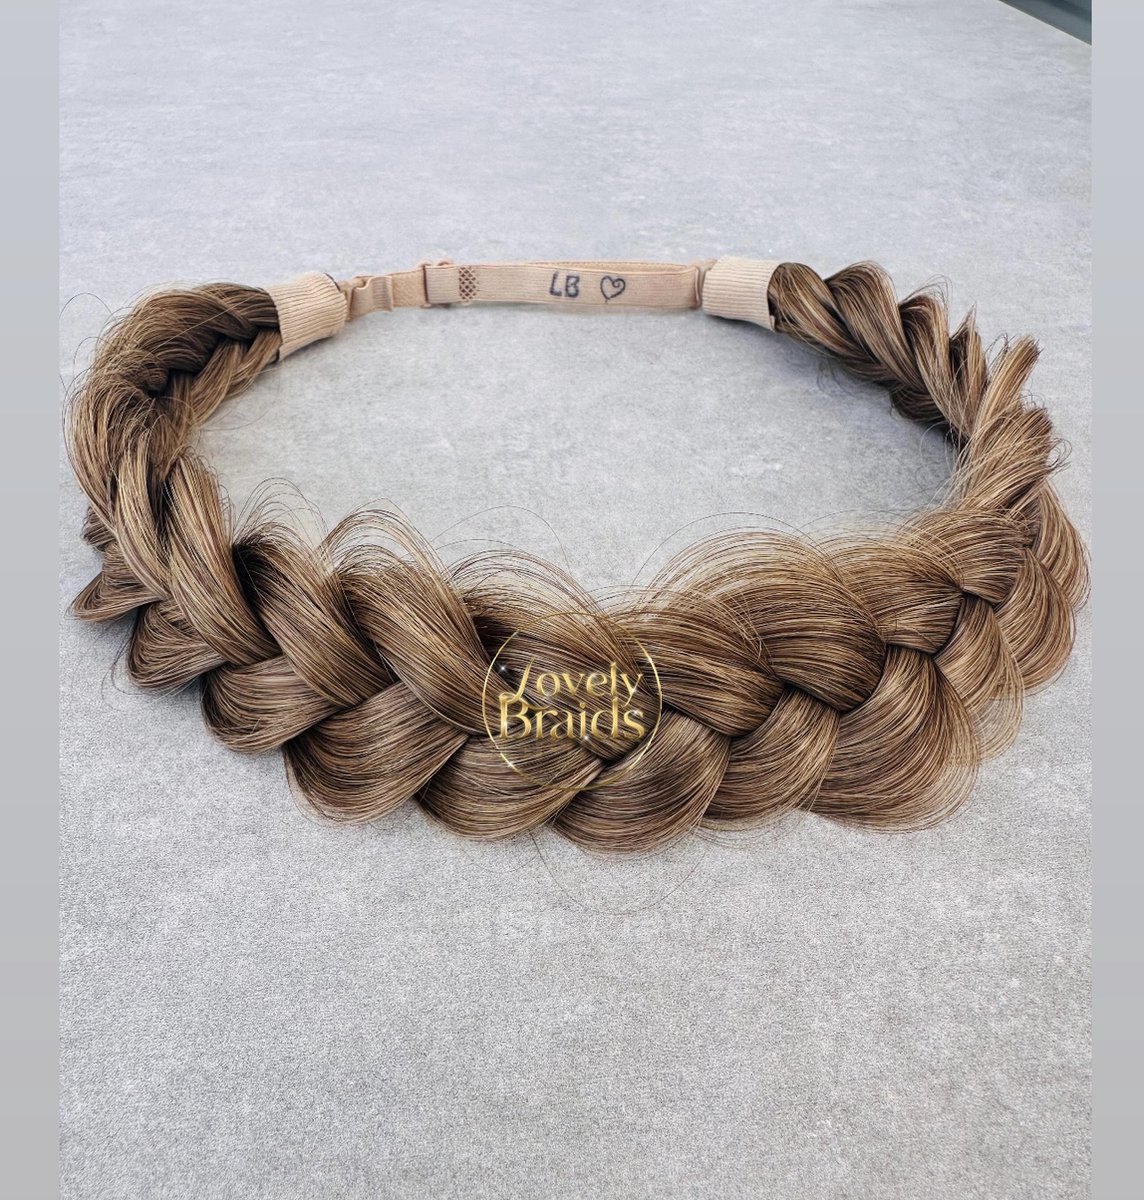 Lovely braids - golden tan blonde - gevlochten haarband - vlecht haarband - haarband vlecht